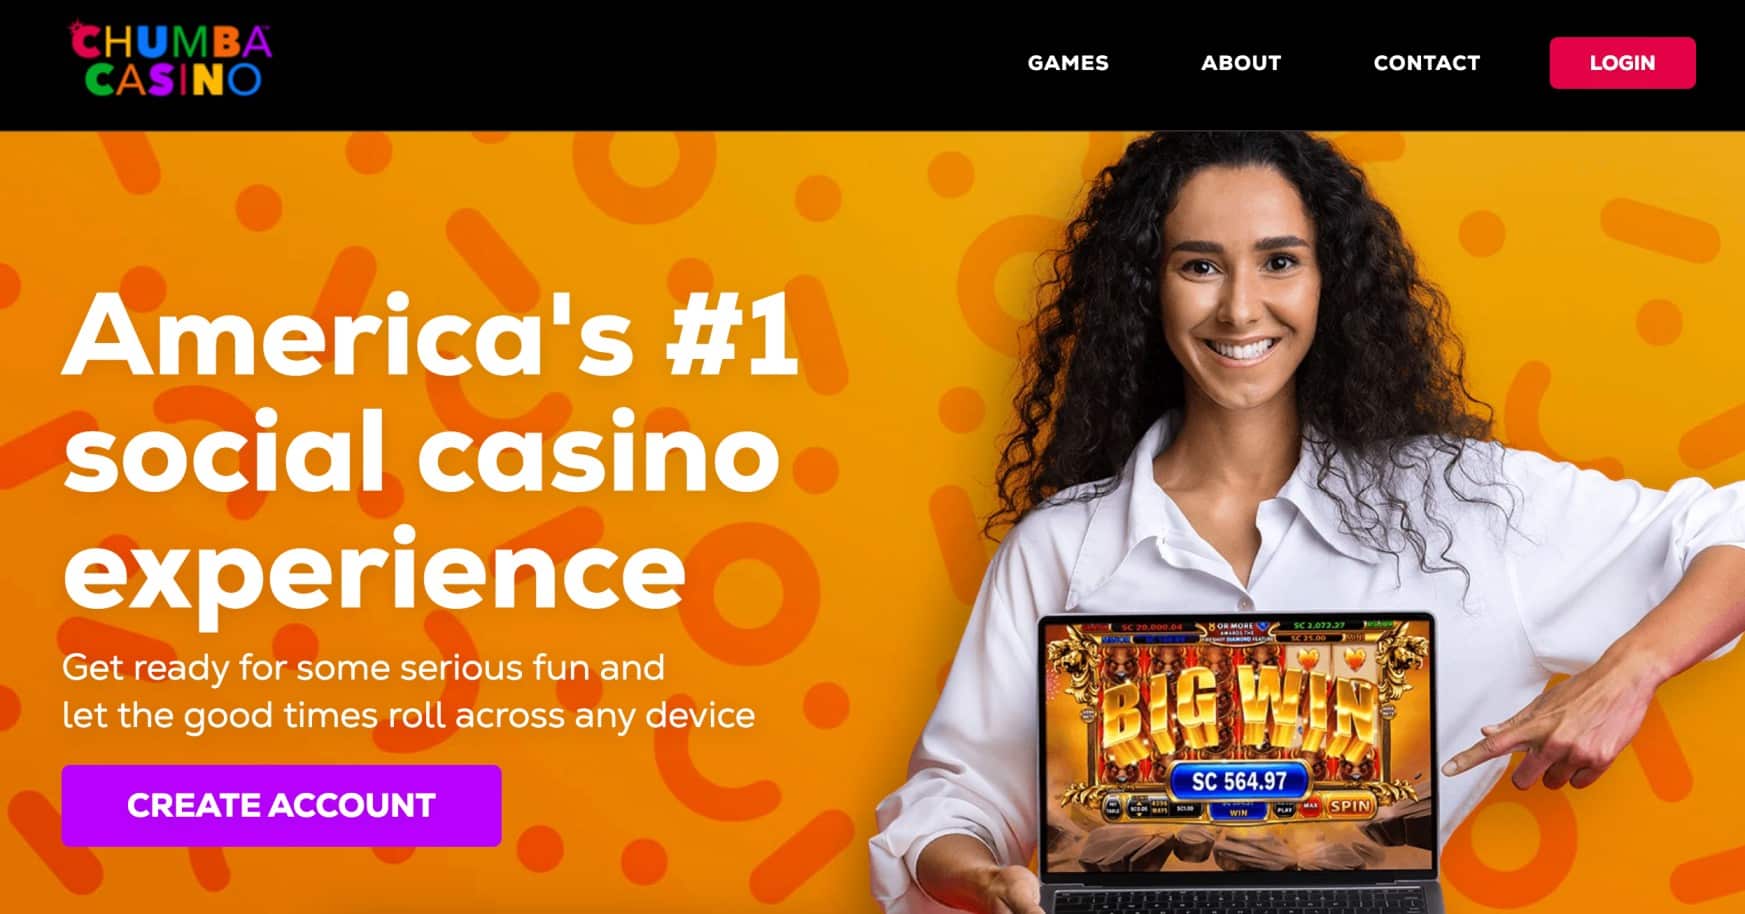 Chumba Casino Review: Is Chumba Casino legit?